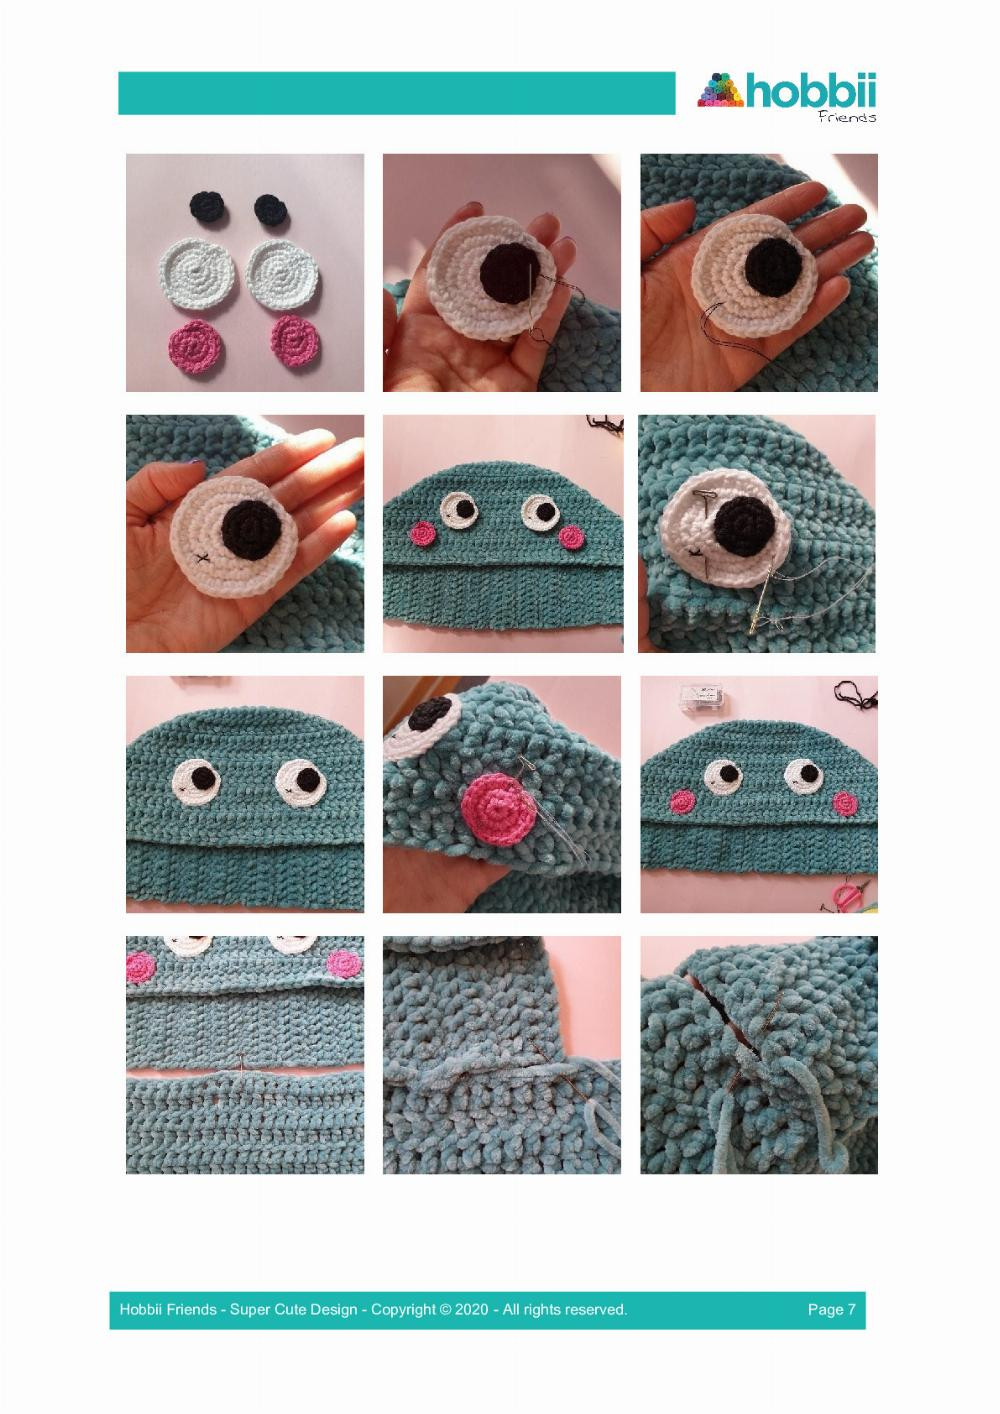 Dino Blanket crochet pattern